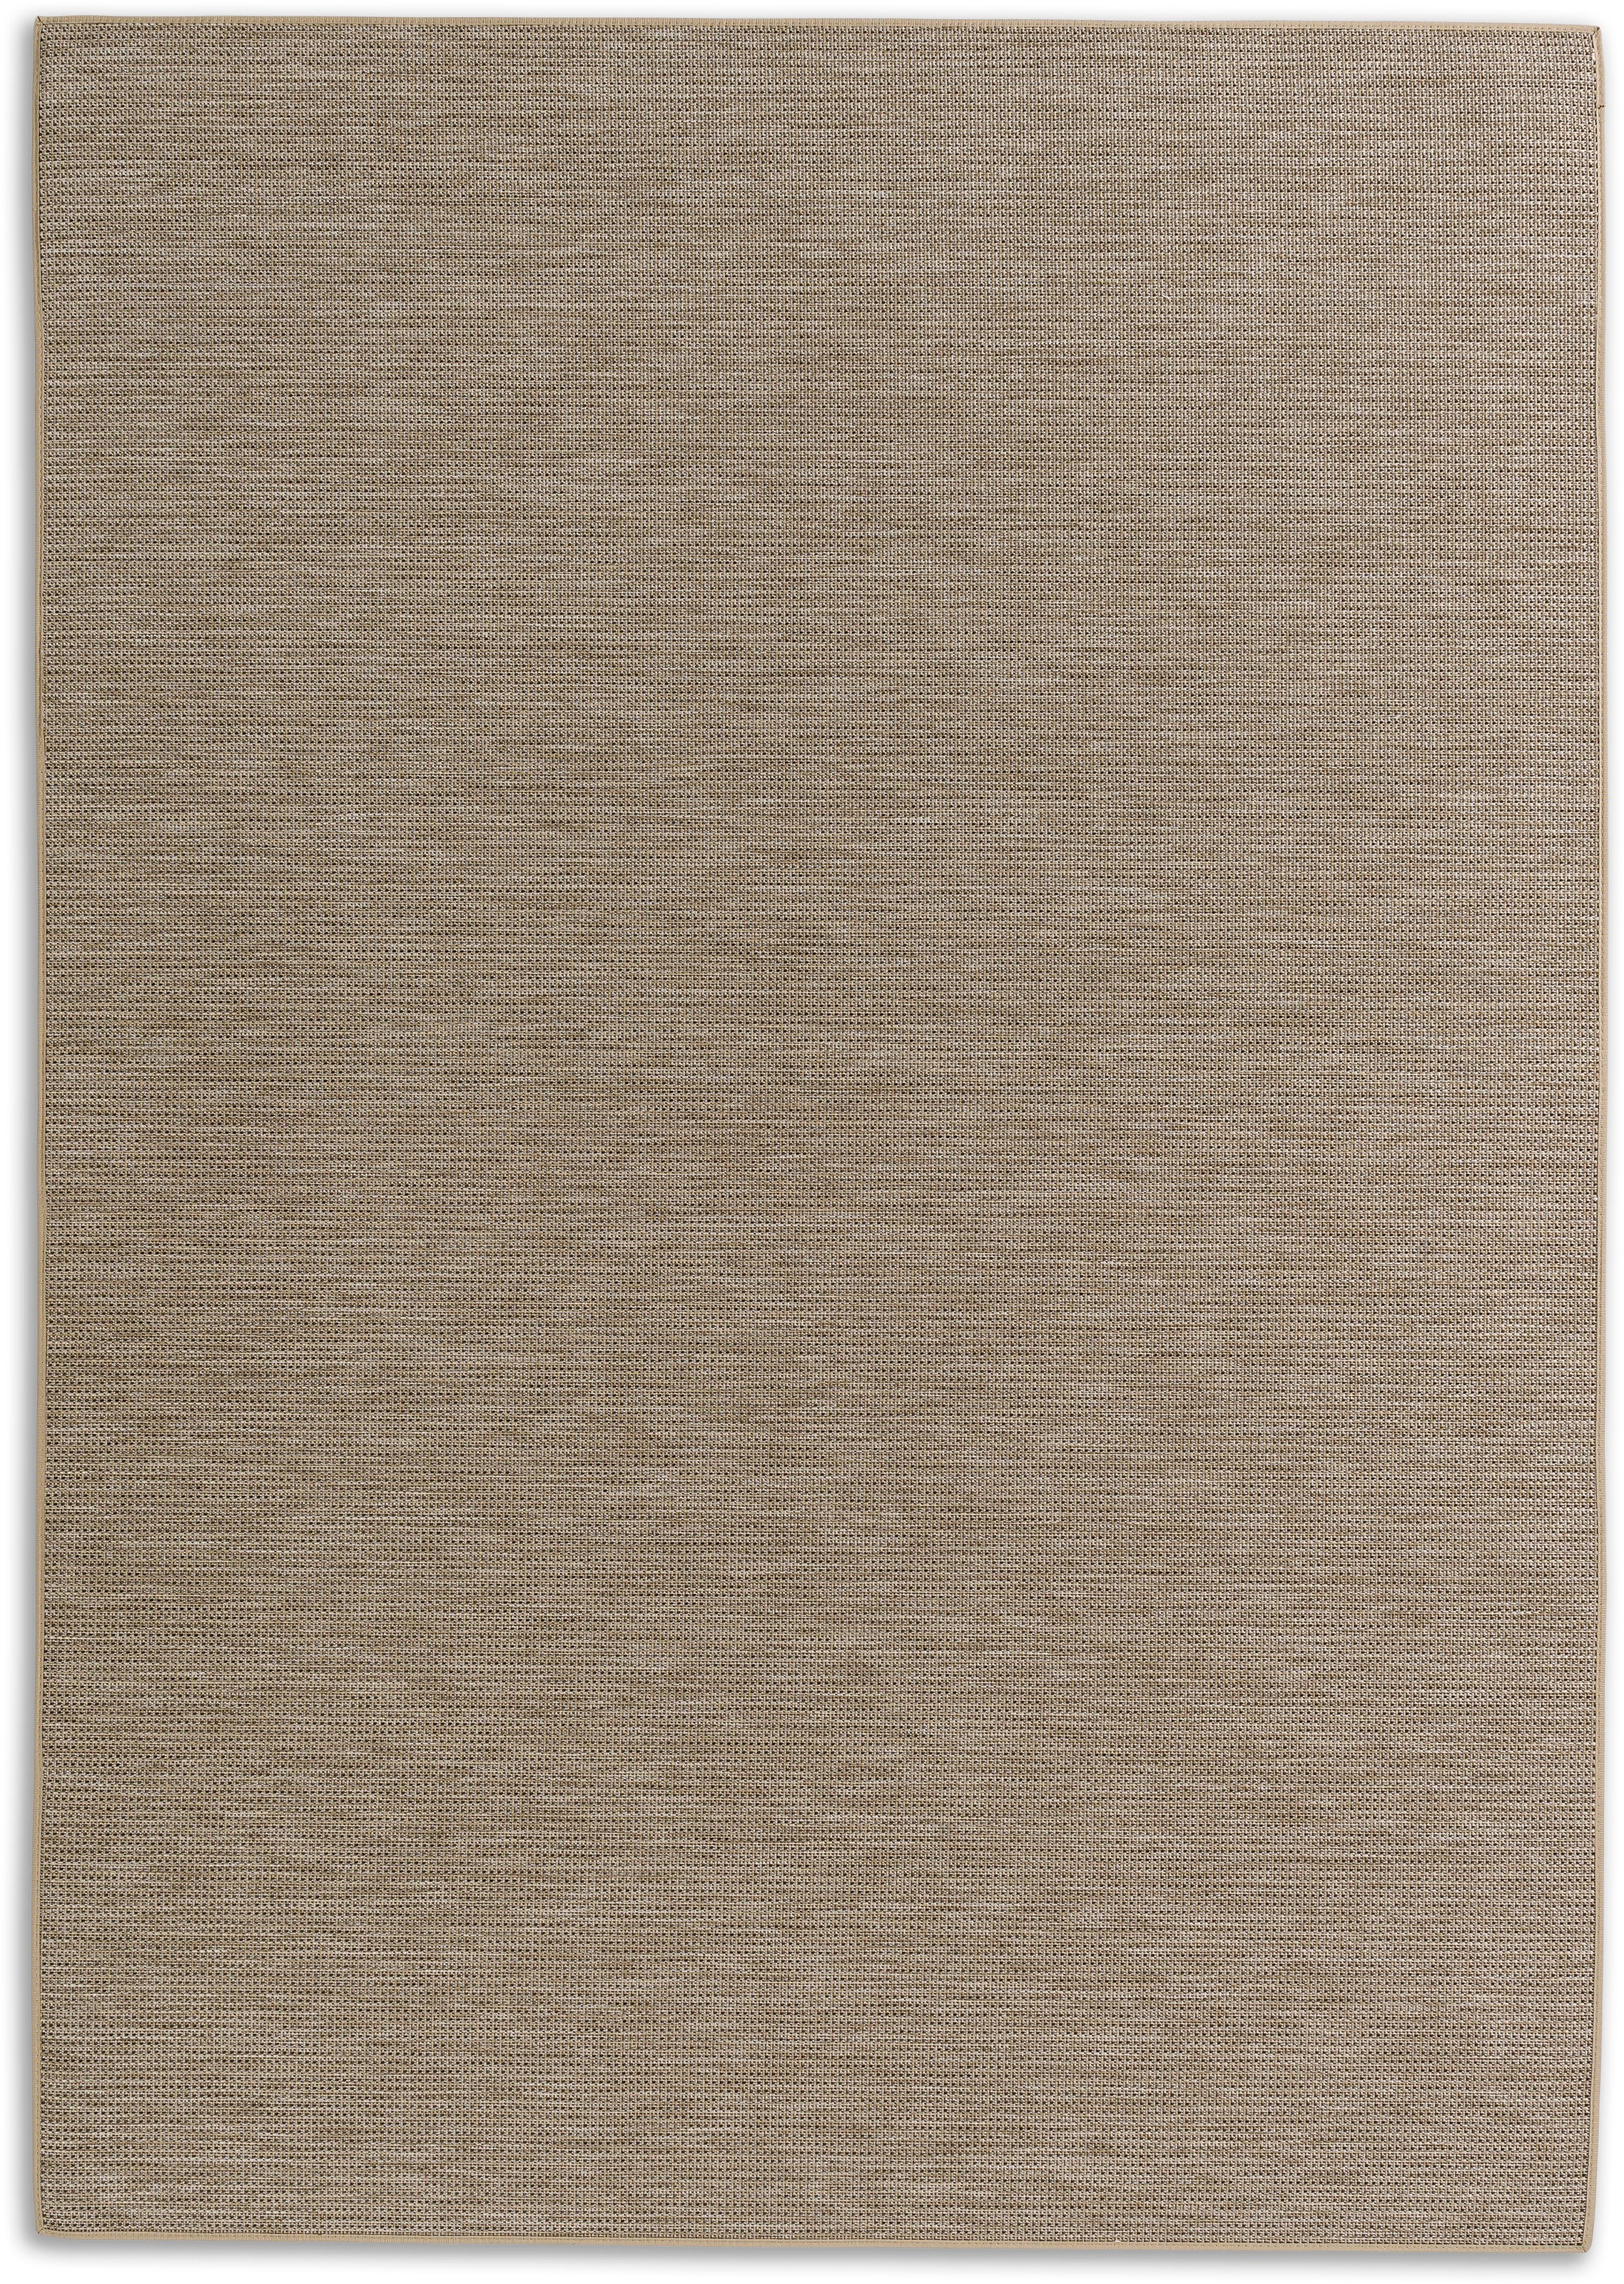 SCHÖNER WOHNEN-Kollektion Teppich »Parkland 6351 220«, rechteckig, In- und Outdoor geeignet, eleganter Flachflorteppich